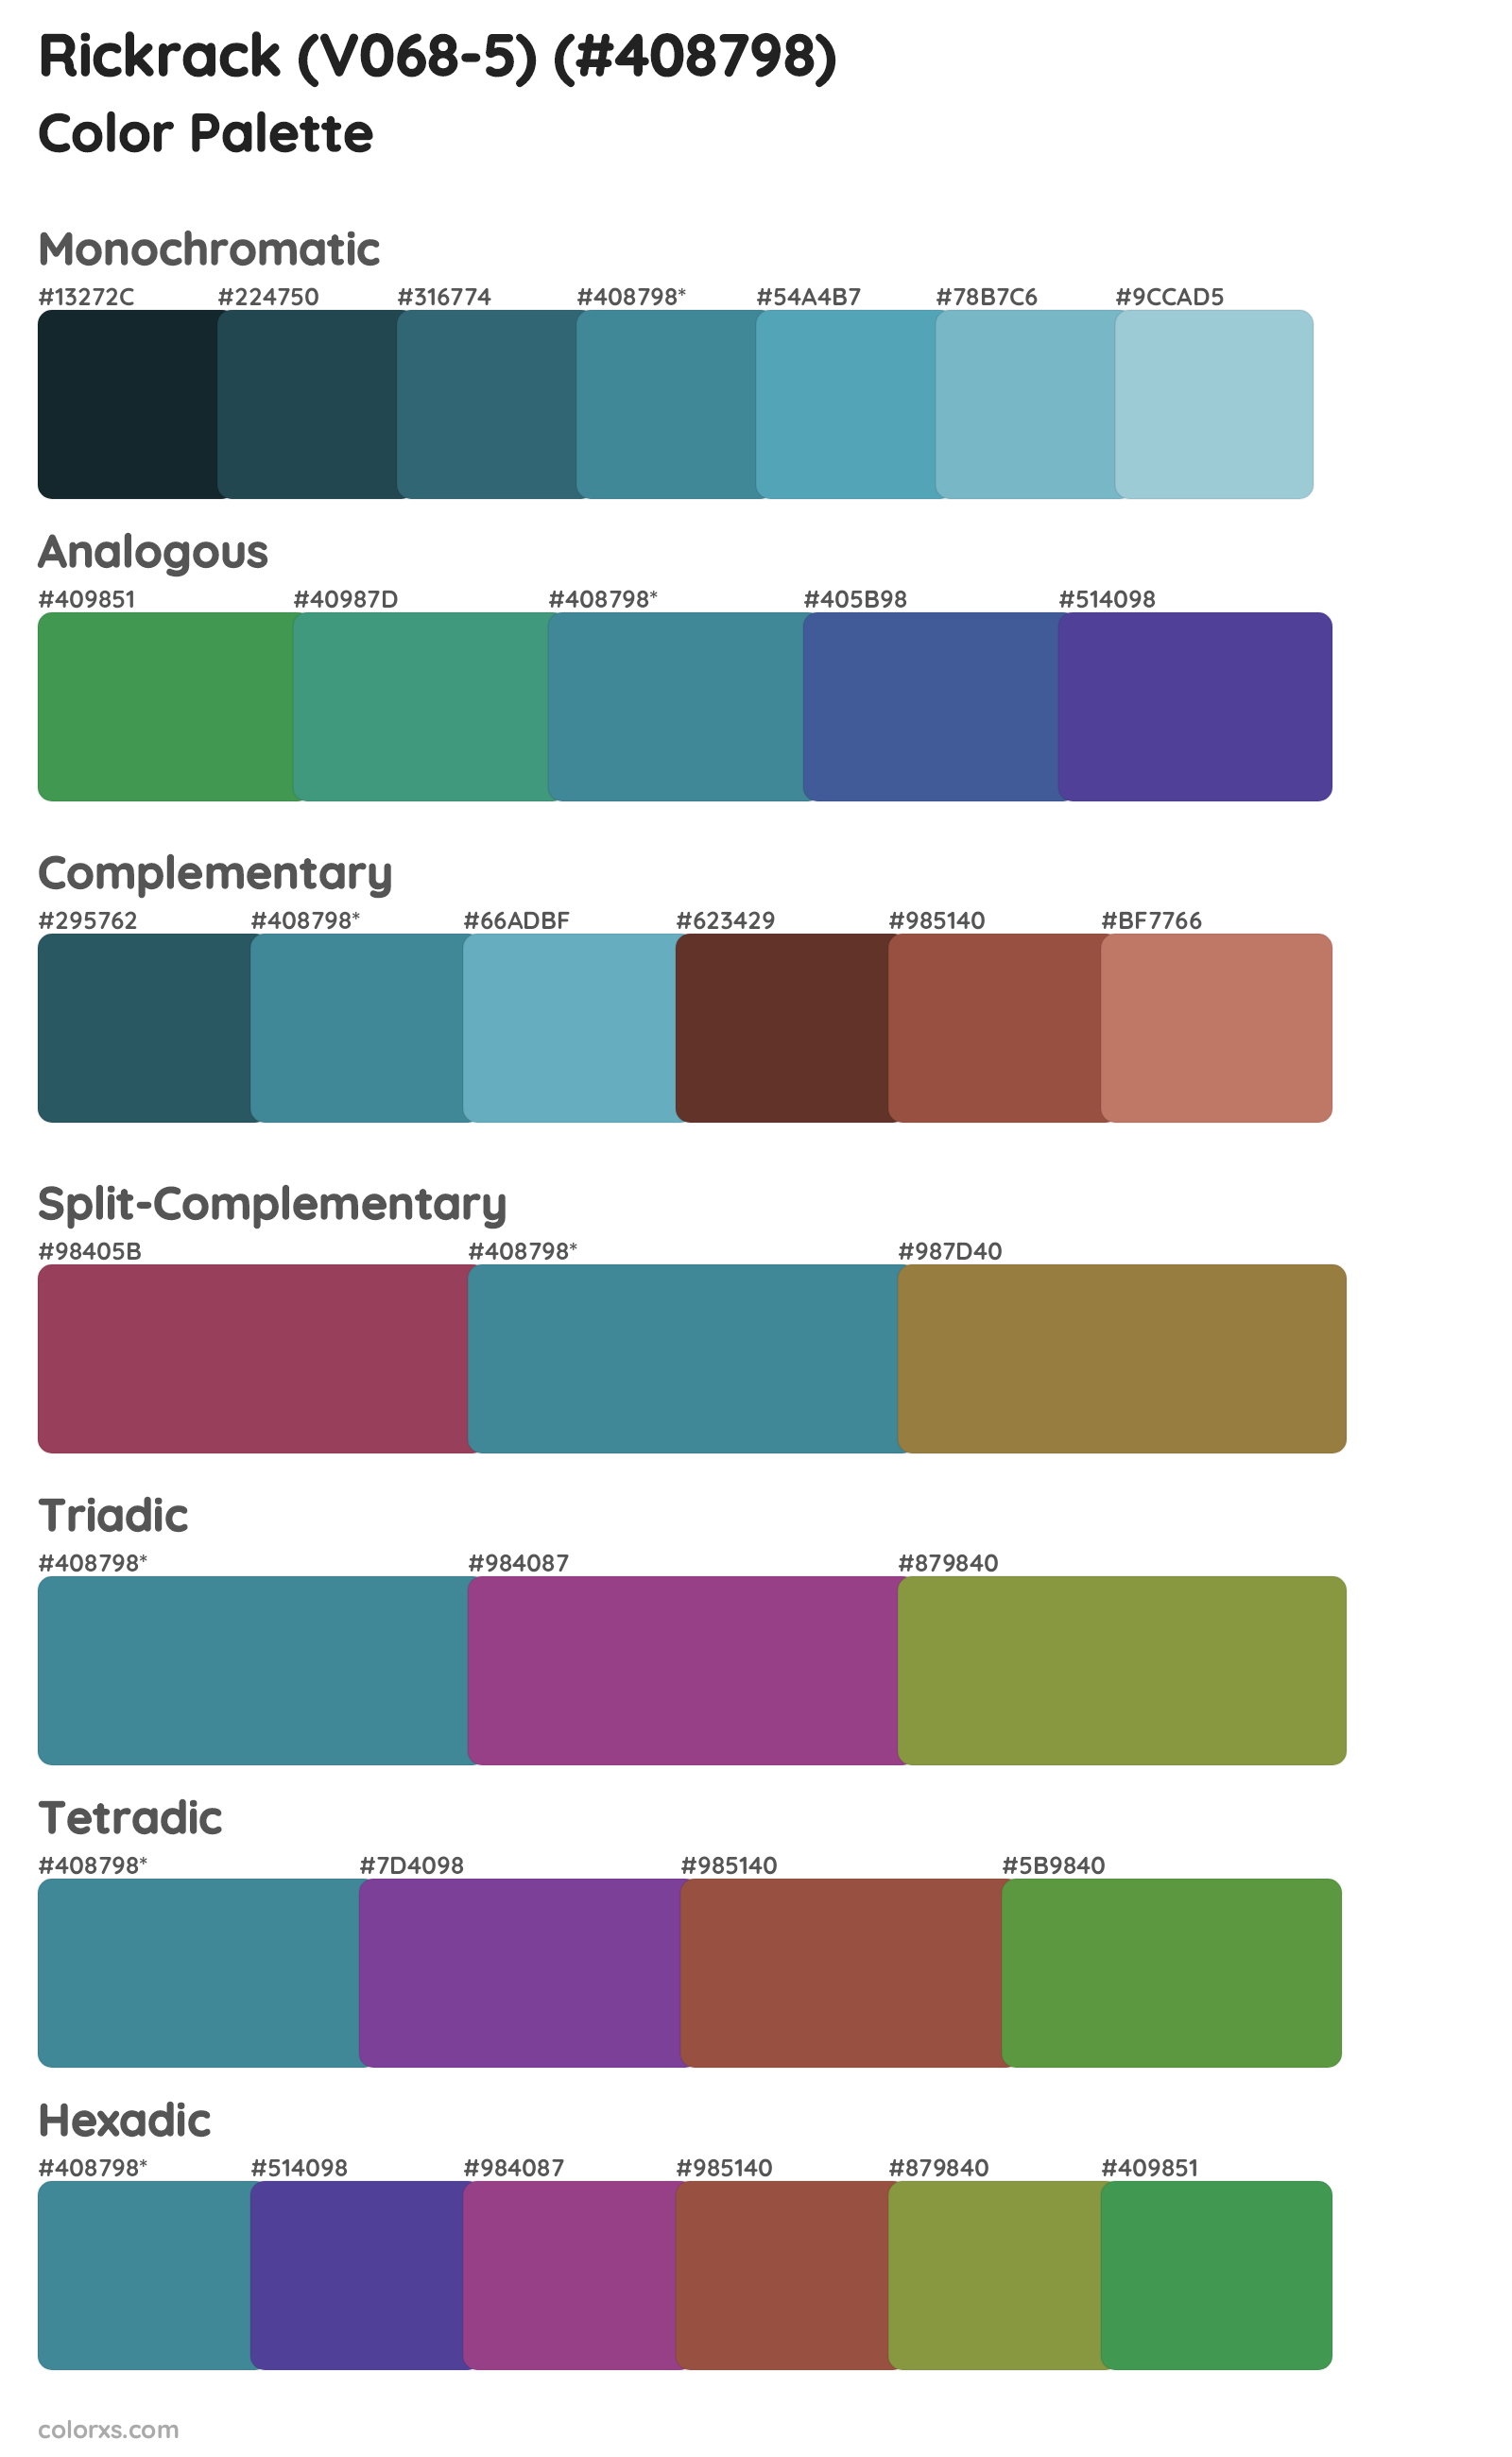 Rickrack (V068-5) Color Scheme Palettes